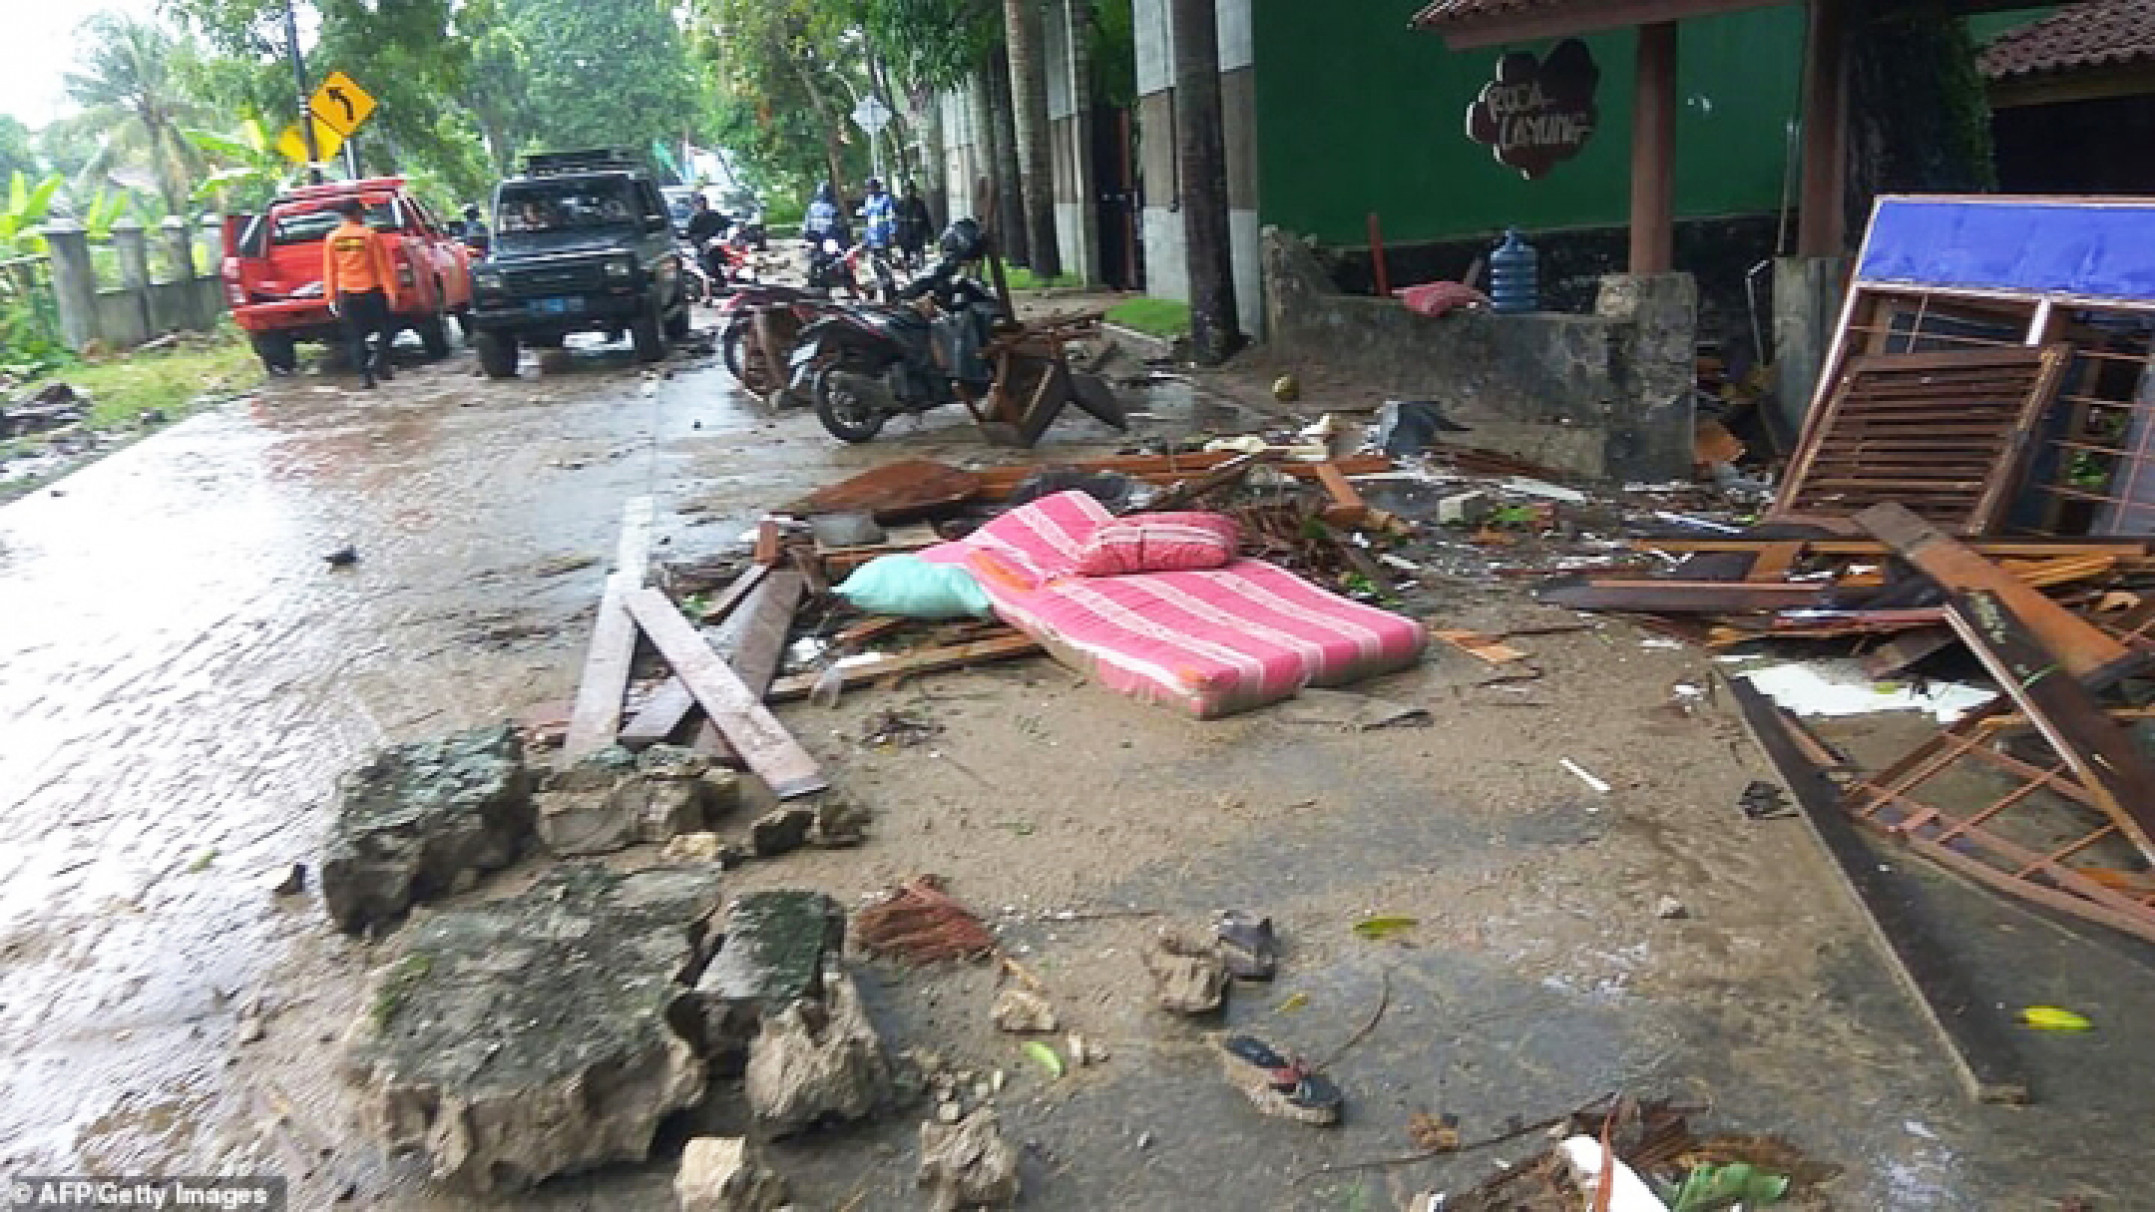 Hình ảnh truyền thông Indonesia đăng tải cho thấy cảnh tượng tan hoang ở các thị trấn chịu ảnh hưởng sóng thần. Nhà cửa bị phá hủy, các mảnh vụn, cây gãy đổ xen lẫn vào bùn đất rải rác trên đường xá. 